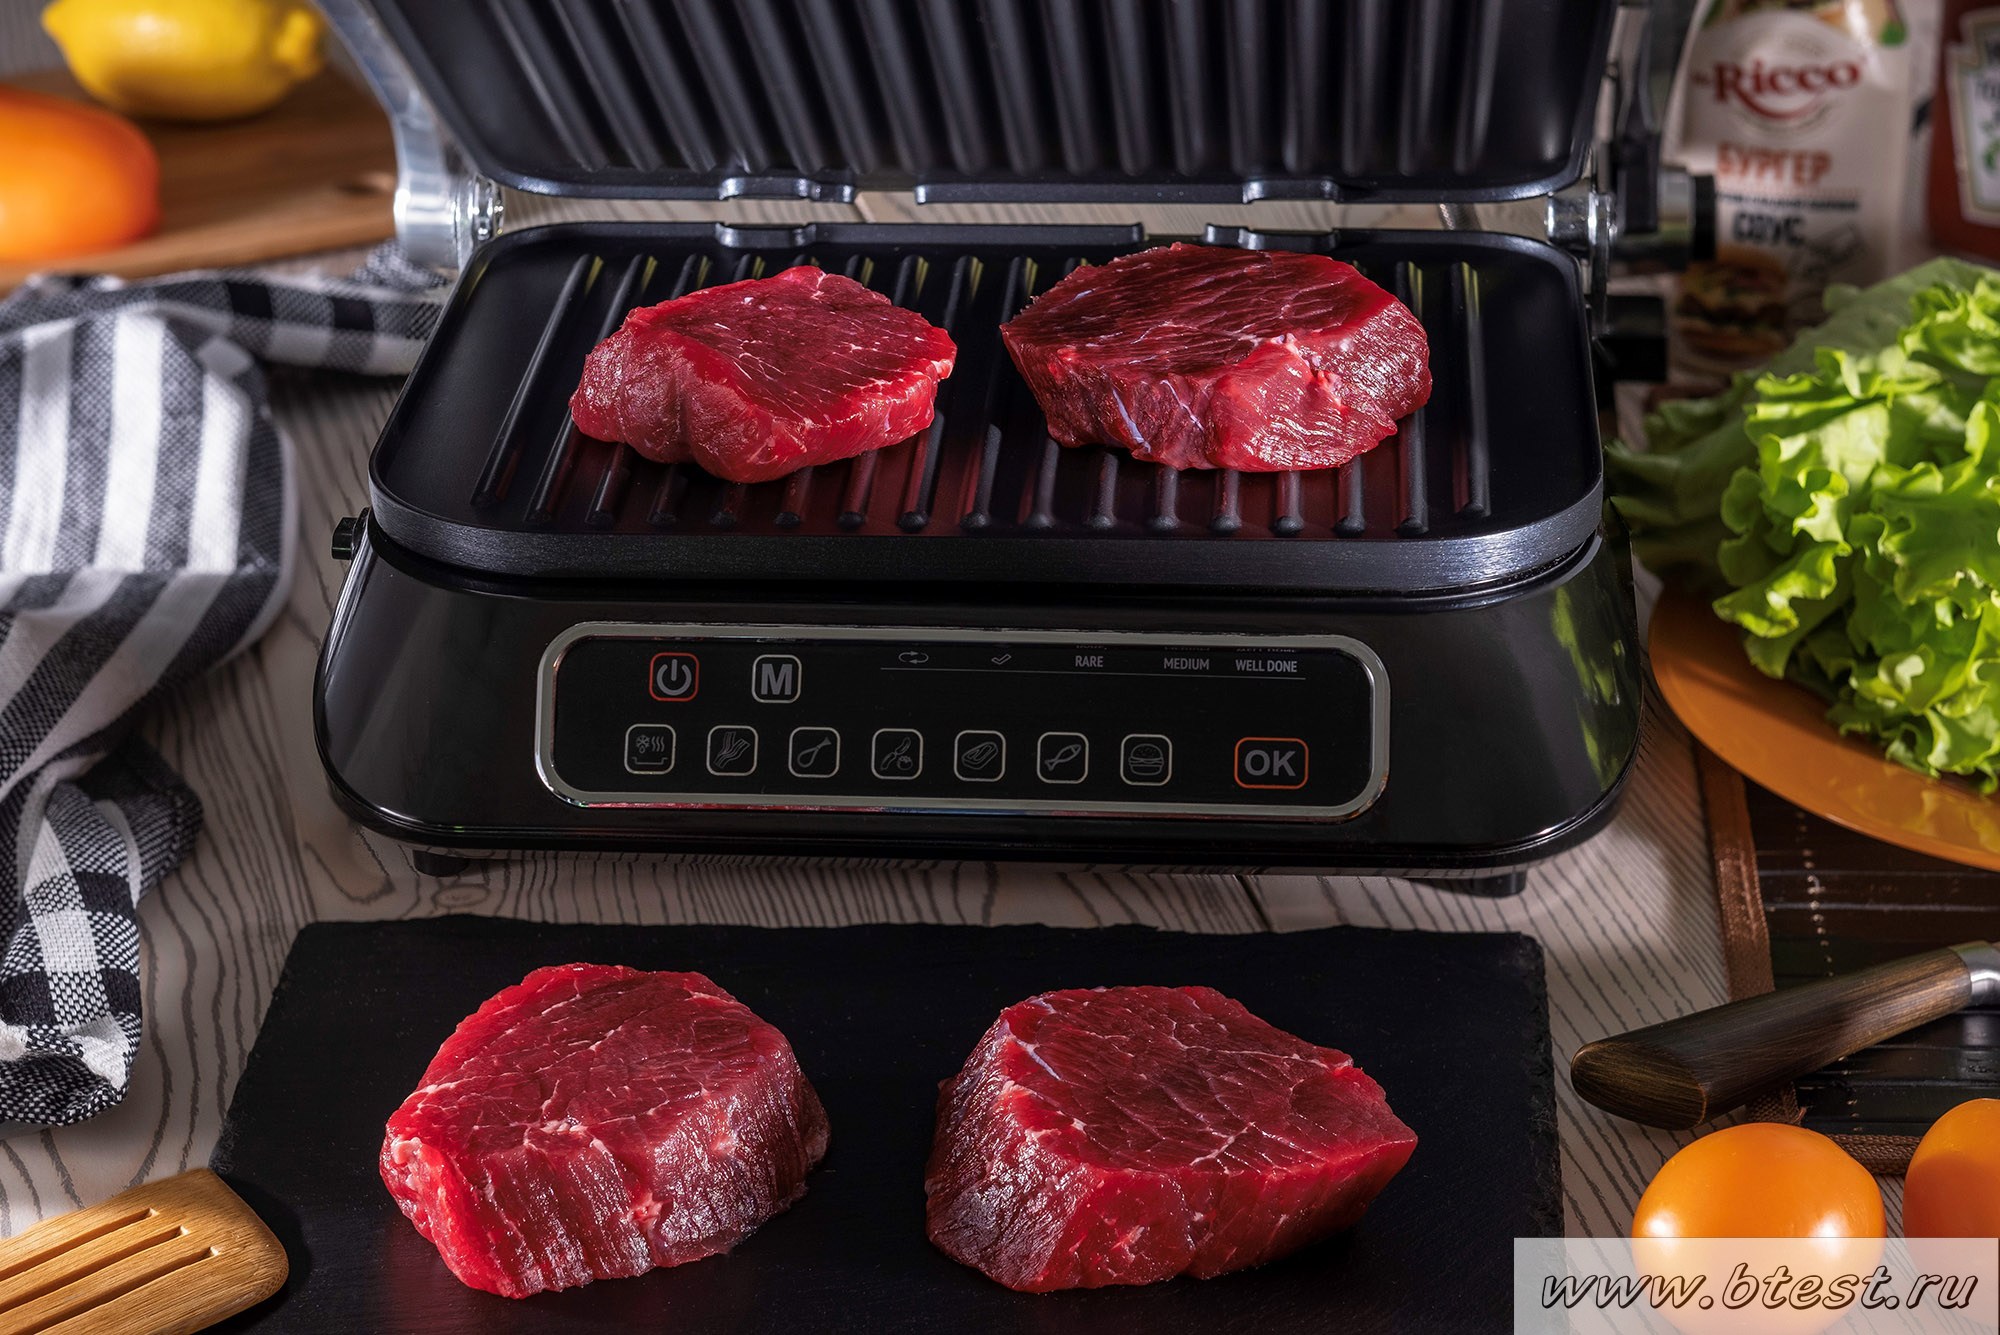 REDMOND SteakMaster - начинаем готовить